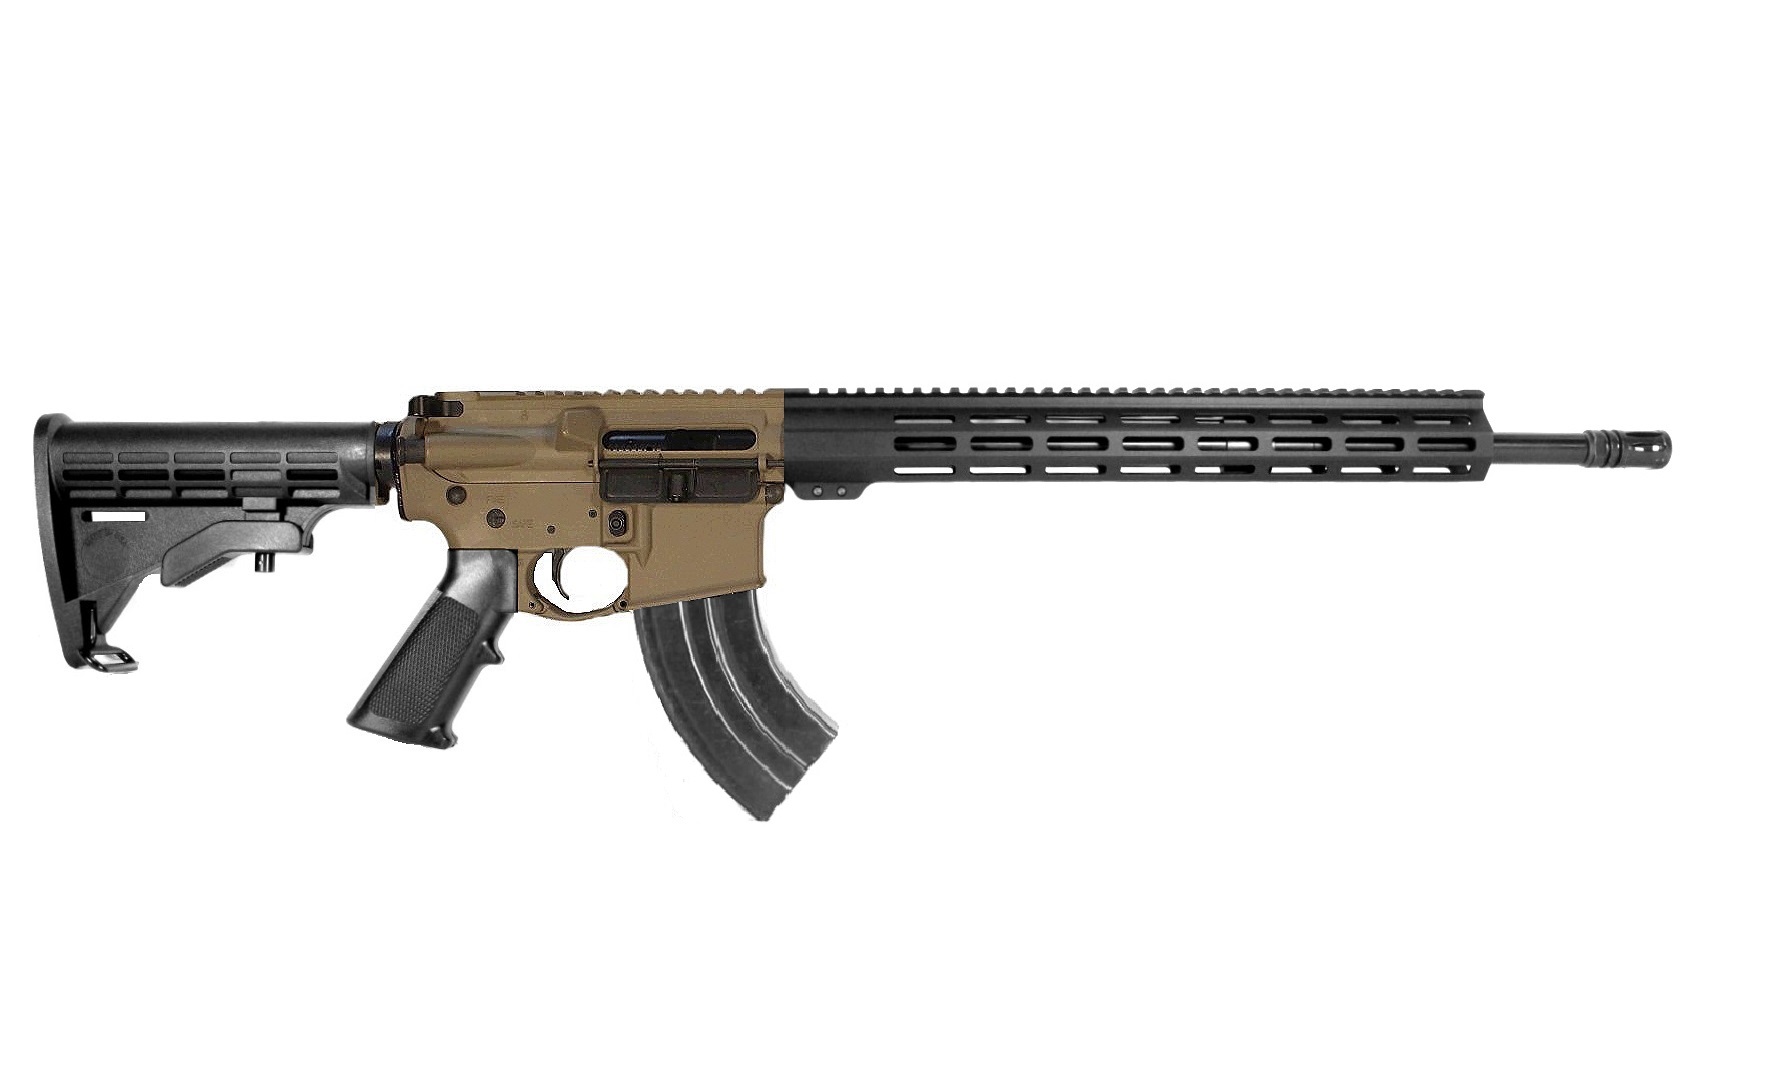 18 inch 7.62x39 M-LOK Rifle | Milspec or Better | USA MADE